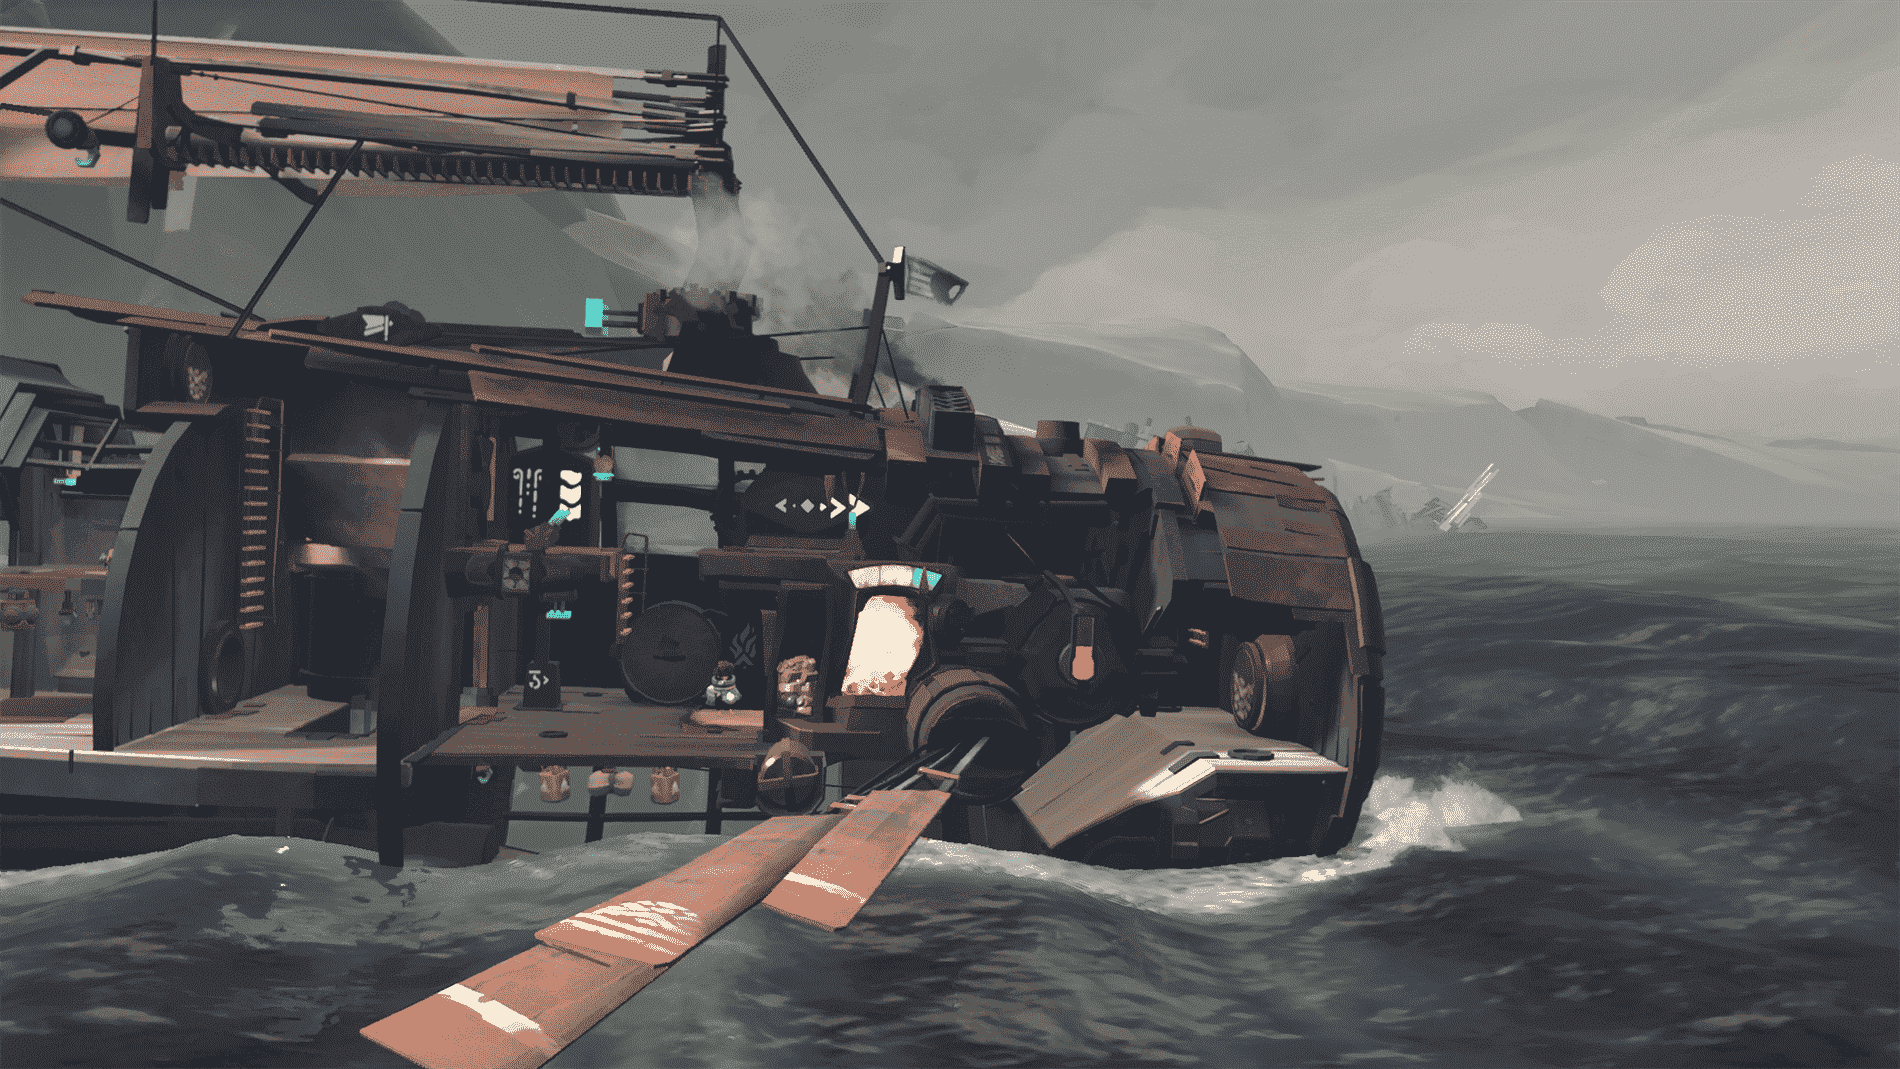 Loin : Capture d'écran de Changing Tides montrant un bateau rouillé et cylindrique sur une eau agitée.